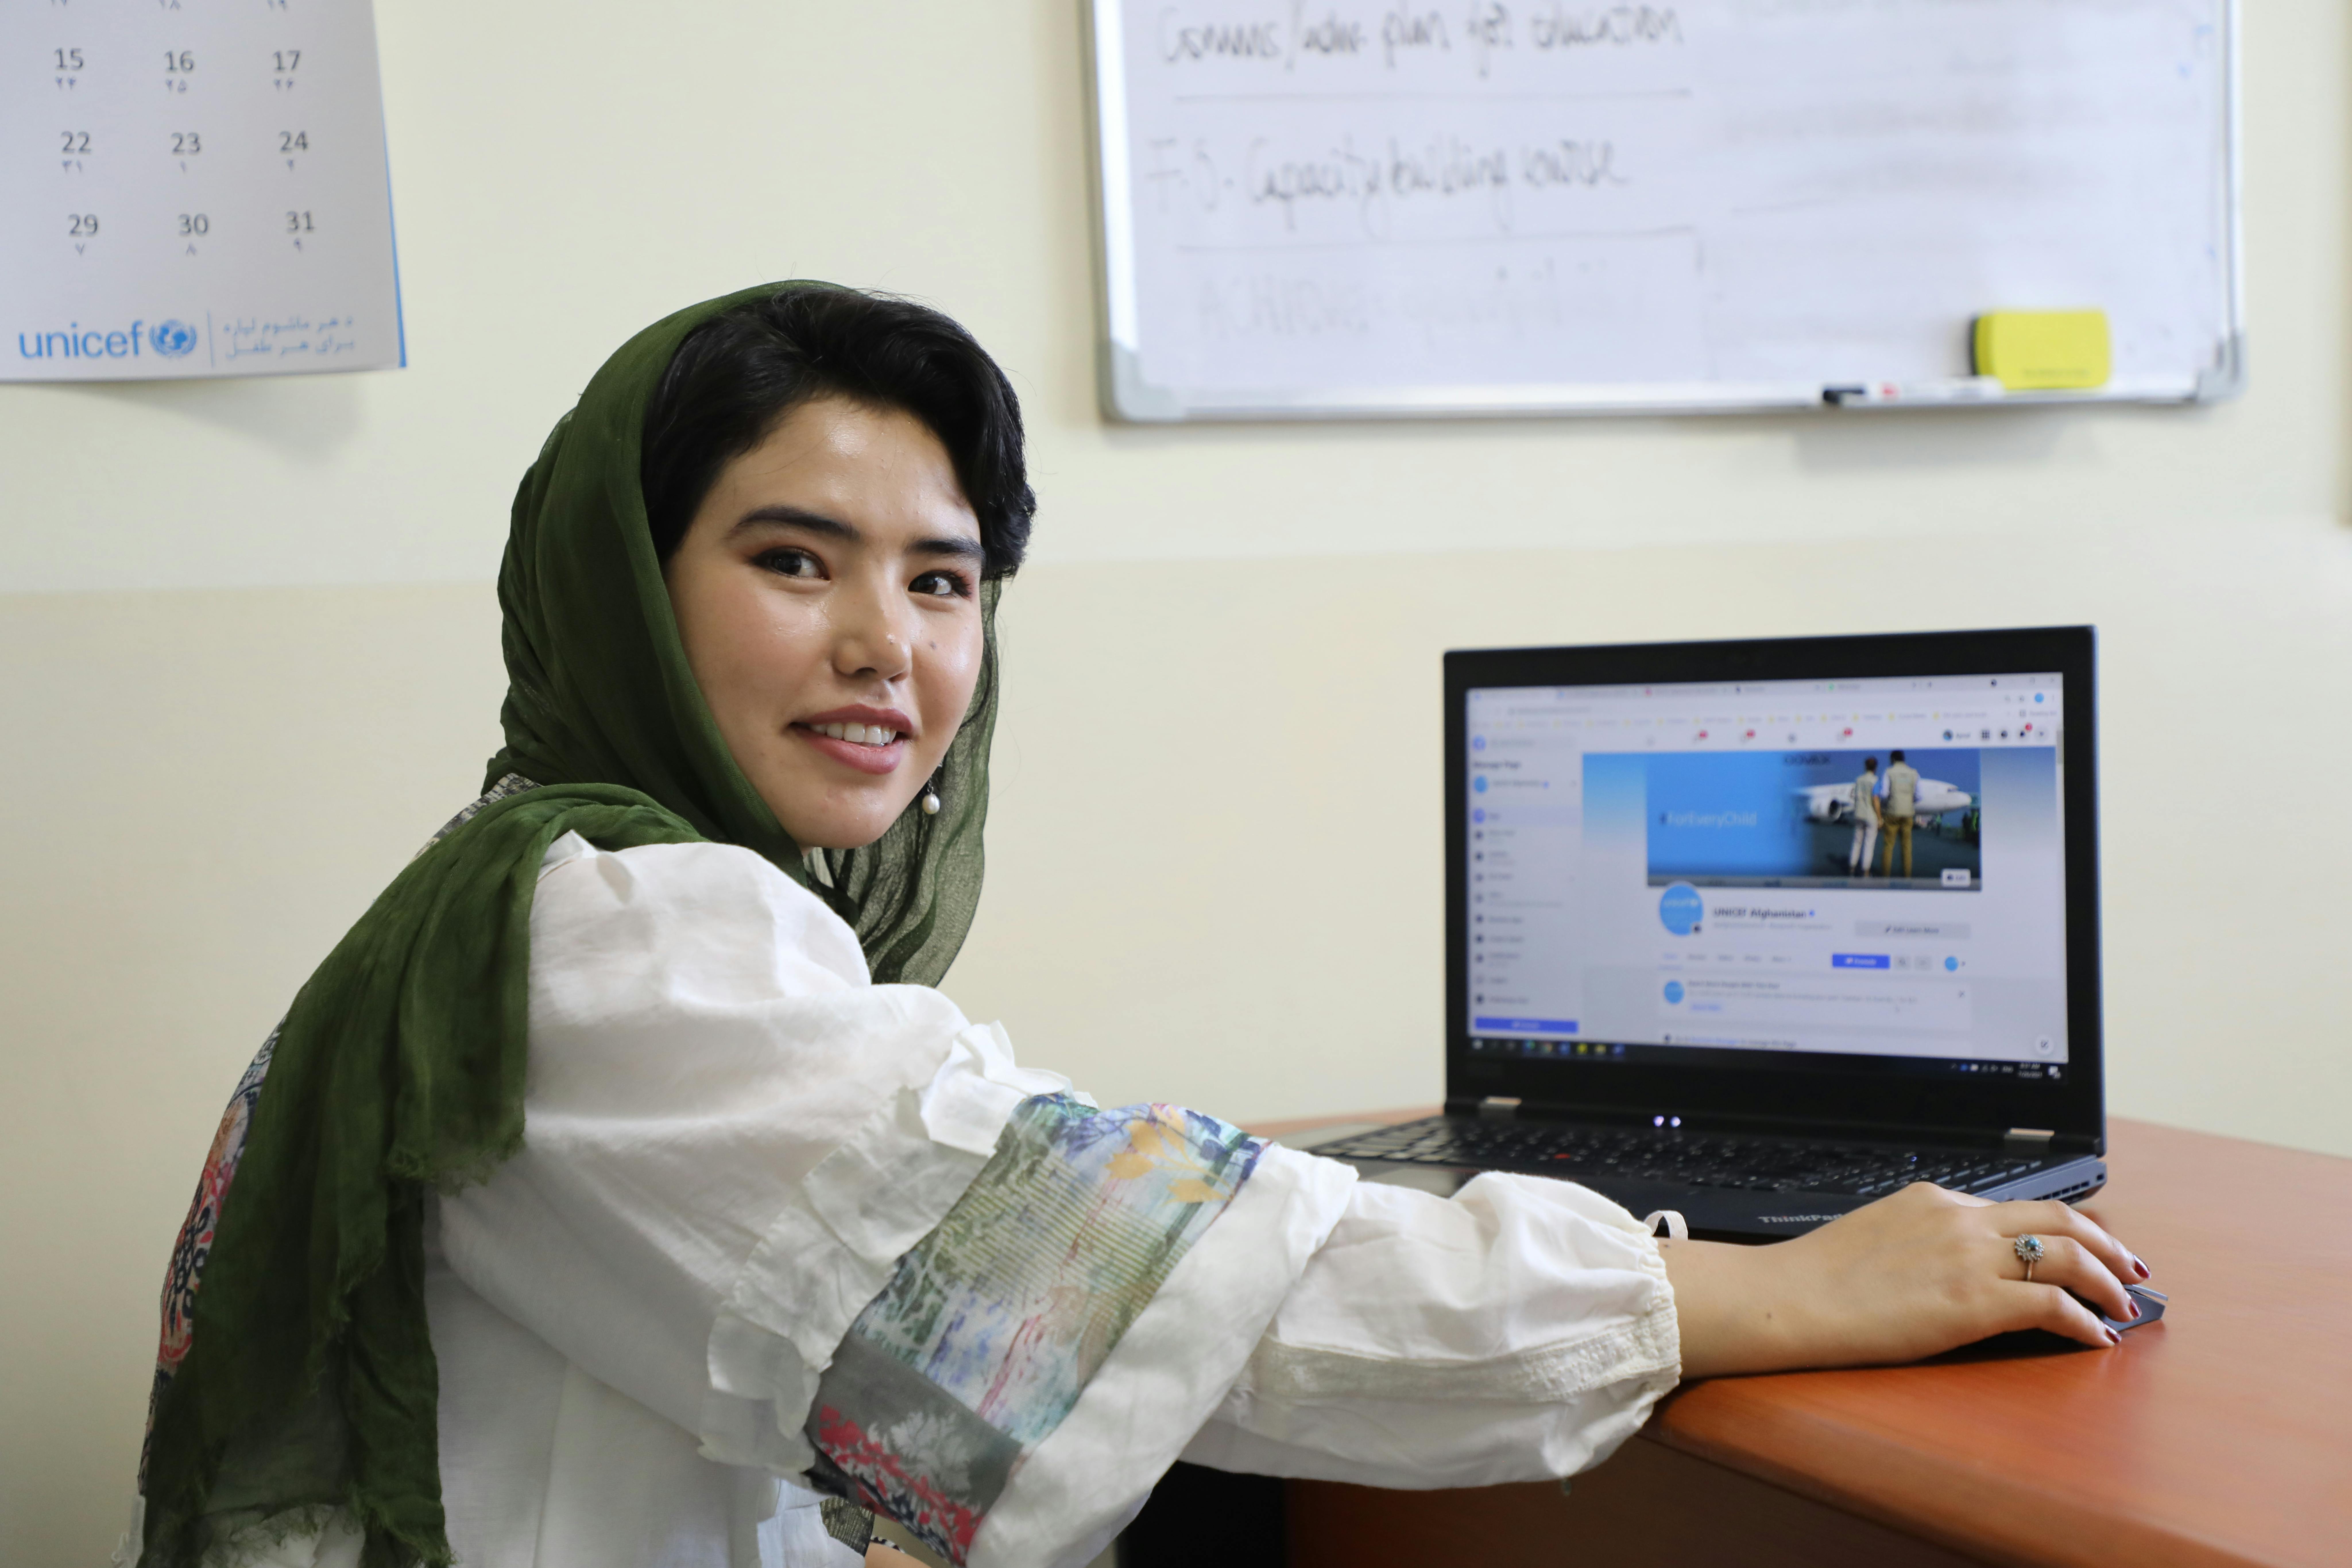 Hadisa, giovane attivista afghana, è una changemaker per l'UNICEF. Da studentessa aveva raggiunto una serie di traguardi ma dallo scorso agosto il suo futuro è diventato molto più incerto.